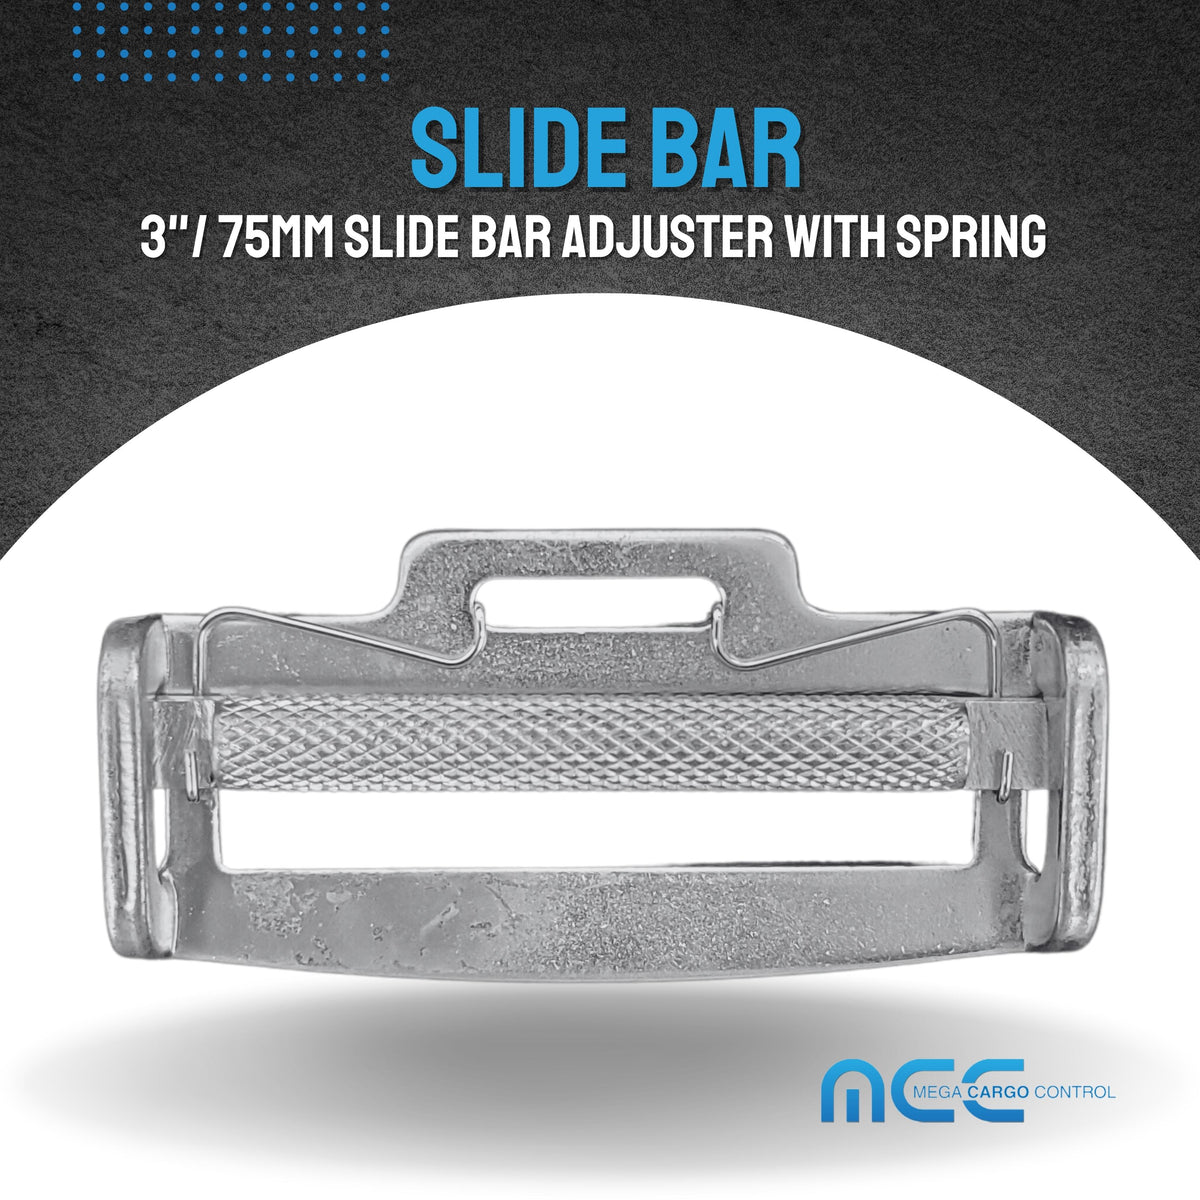 3" / 75mm Slide Bar Adjuster With Spring